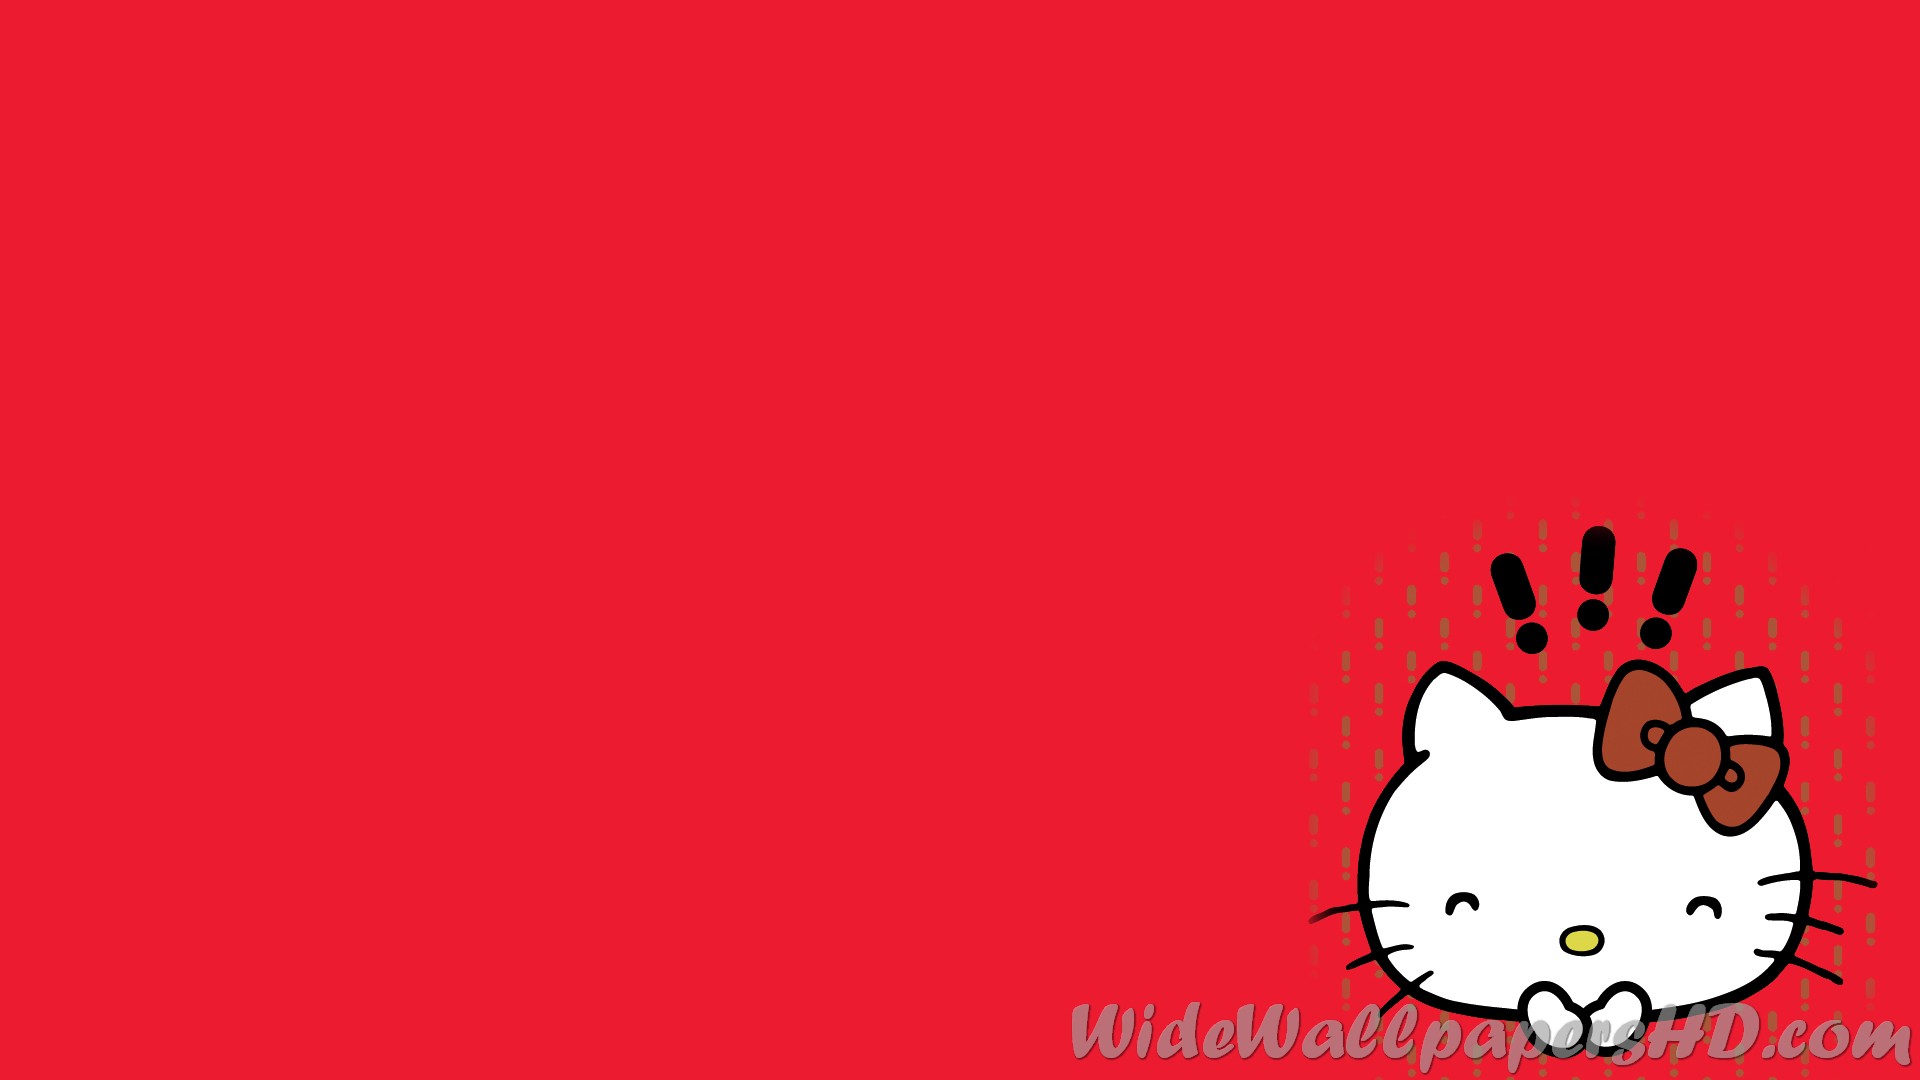 Với những Hình nền Hello Kitty Đỏ, máy tính của bạn sẽ trở nên đáng yêu hơn bao giờ hết. Hình nền Hello Kitty Đỏ đầy sức sống và đầy màu sắc sẽ giúp cho bạn thư giãn mỗi khi nhìn vào máy tính của mình. Nhấn vào hình để xem ngay các Hình nền Hello Kitty Đỏ đẹp nhất.